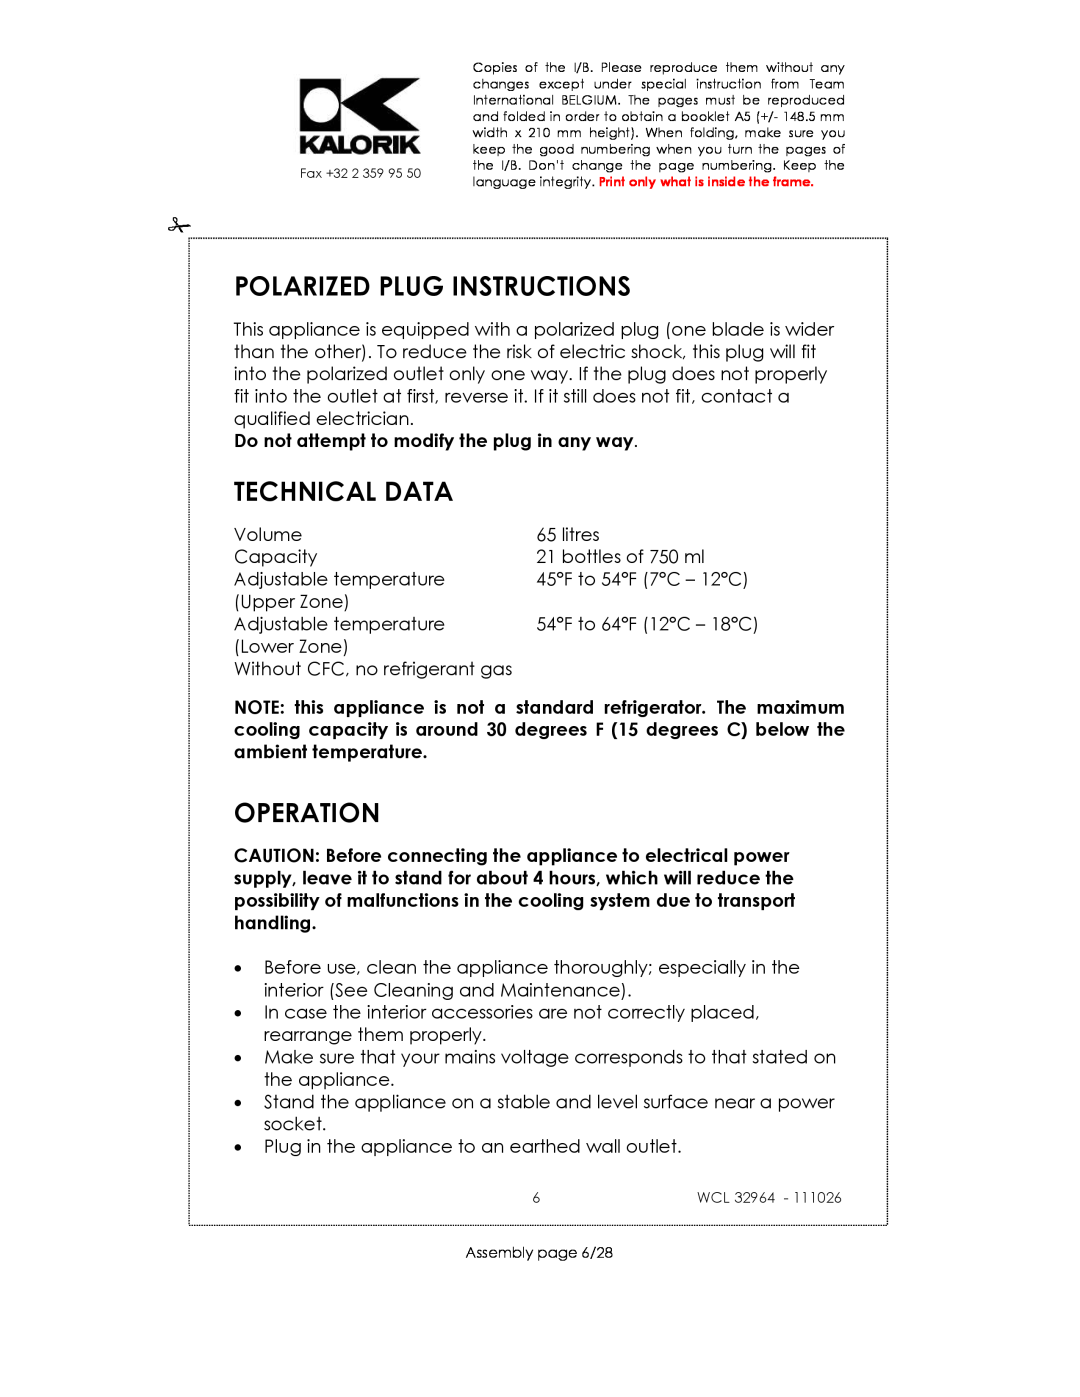 Kalorik USK WCL 32964 115V~130W manual Polarized Plug Instructions, Technical Data, Operation 